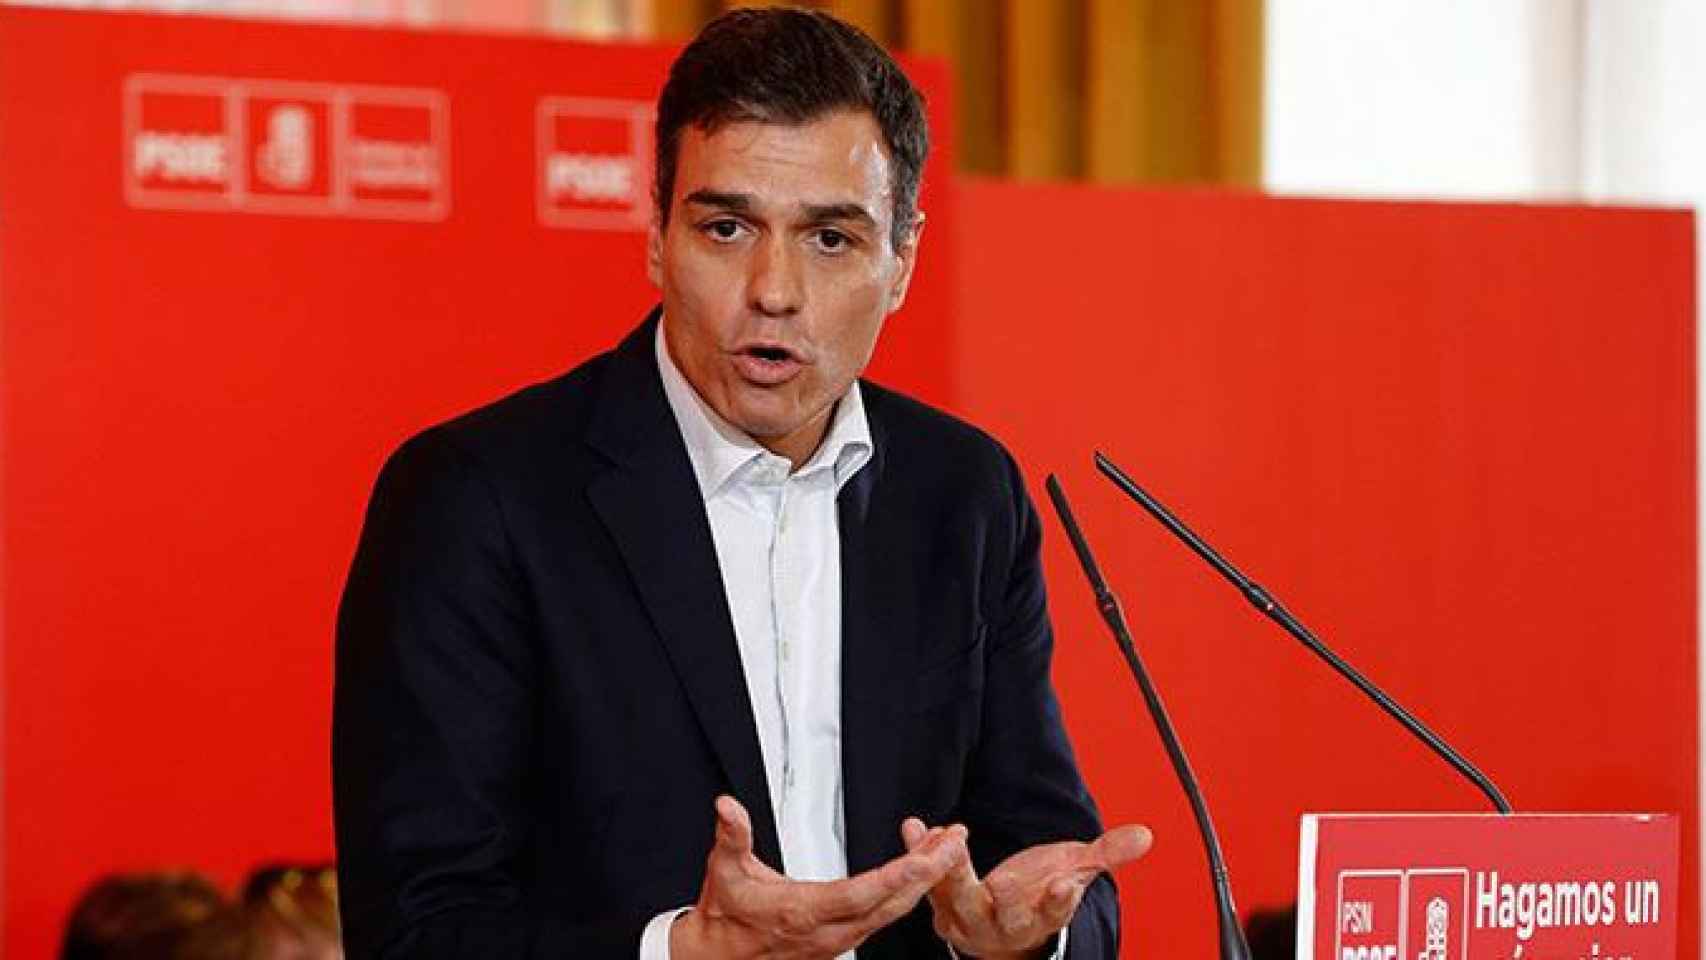 El PSOE denuncia ante los socialistas europeos la xenofobia ultranacionalista de Quim Torra